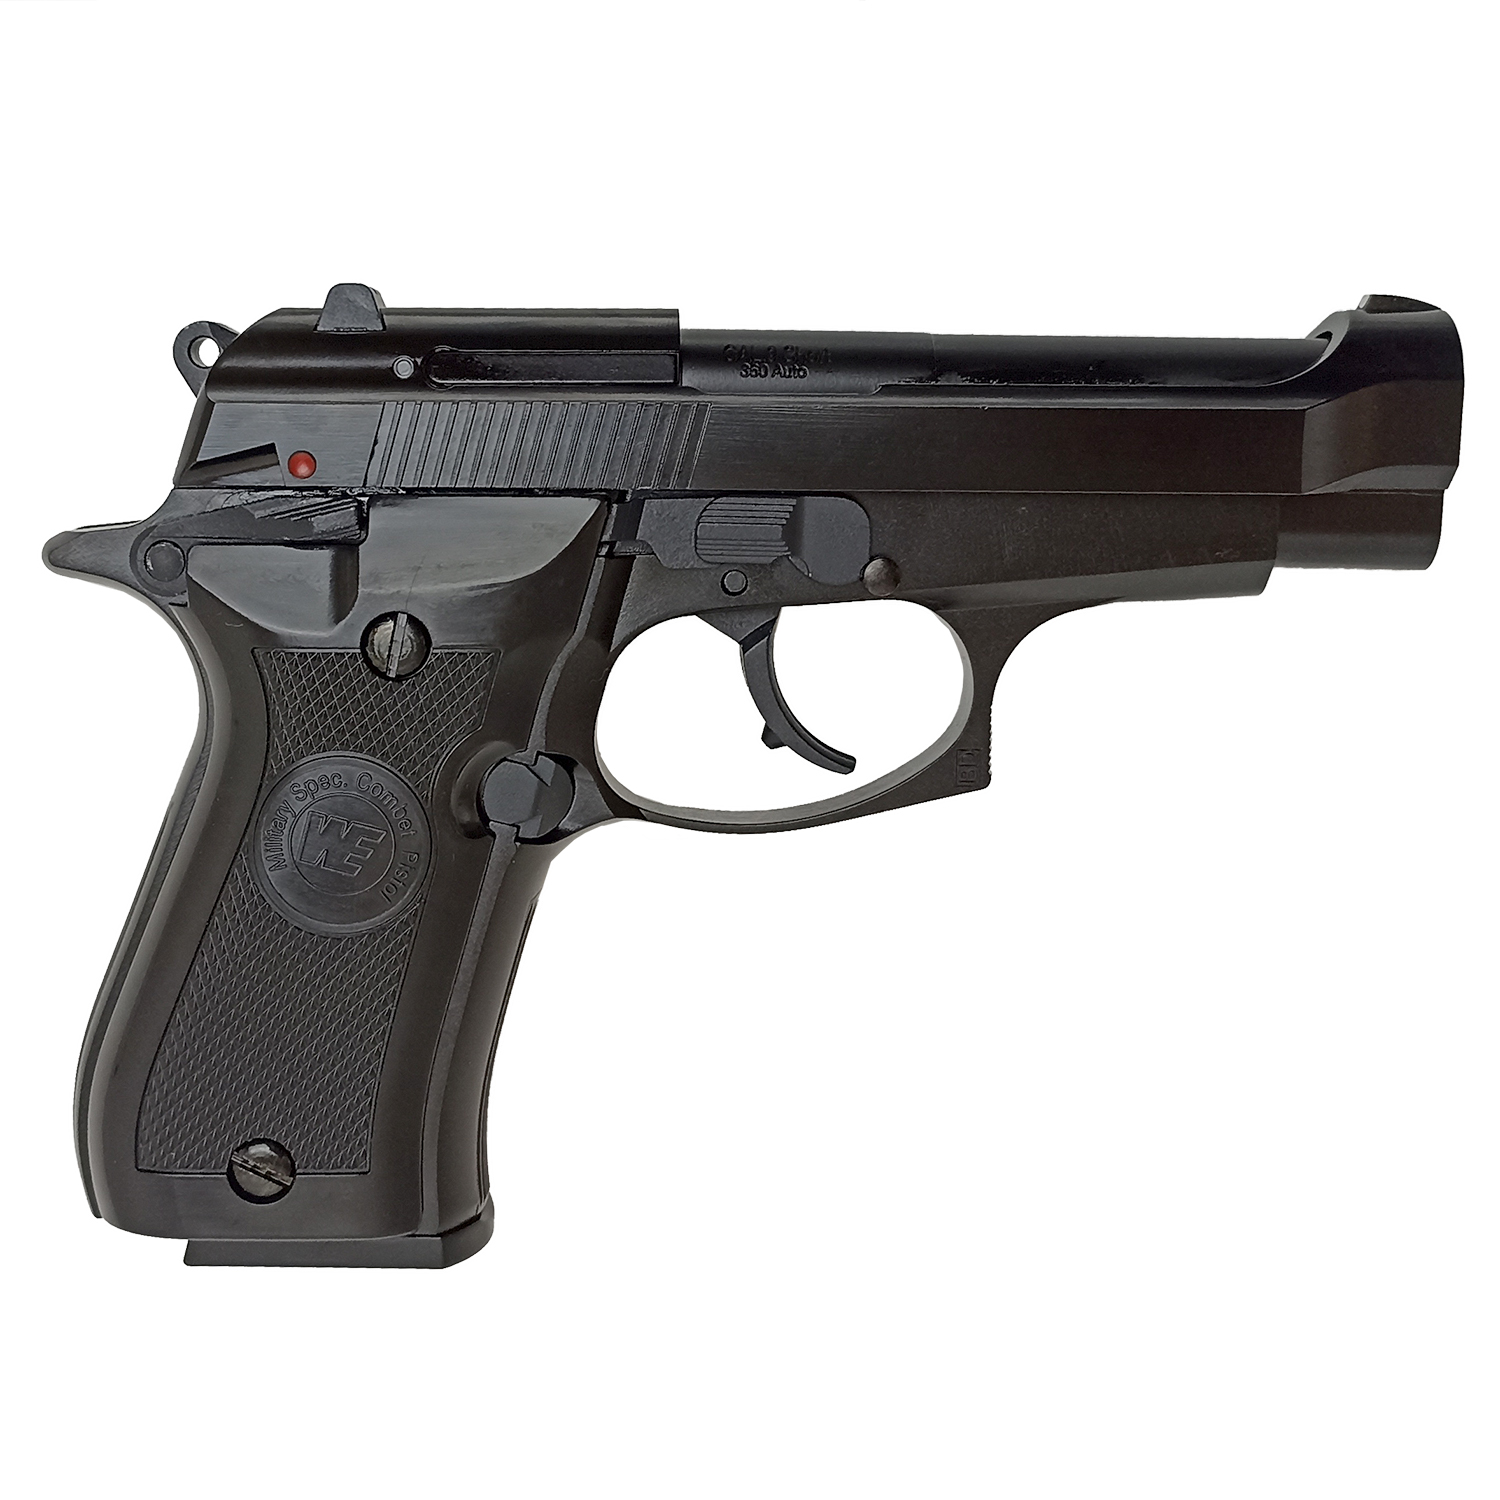 Пистолет страйкбольный (WE) Beretta M84 GBB WE-M013-BK / GP322 Professional Training